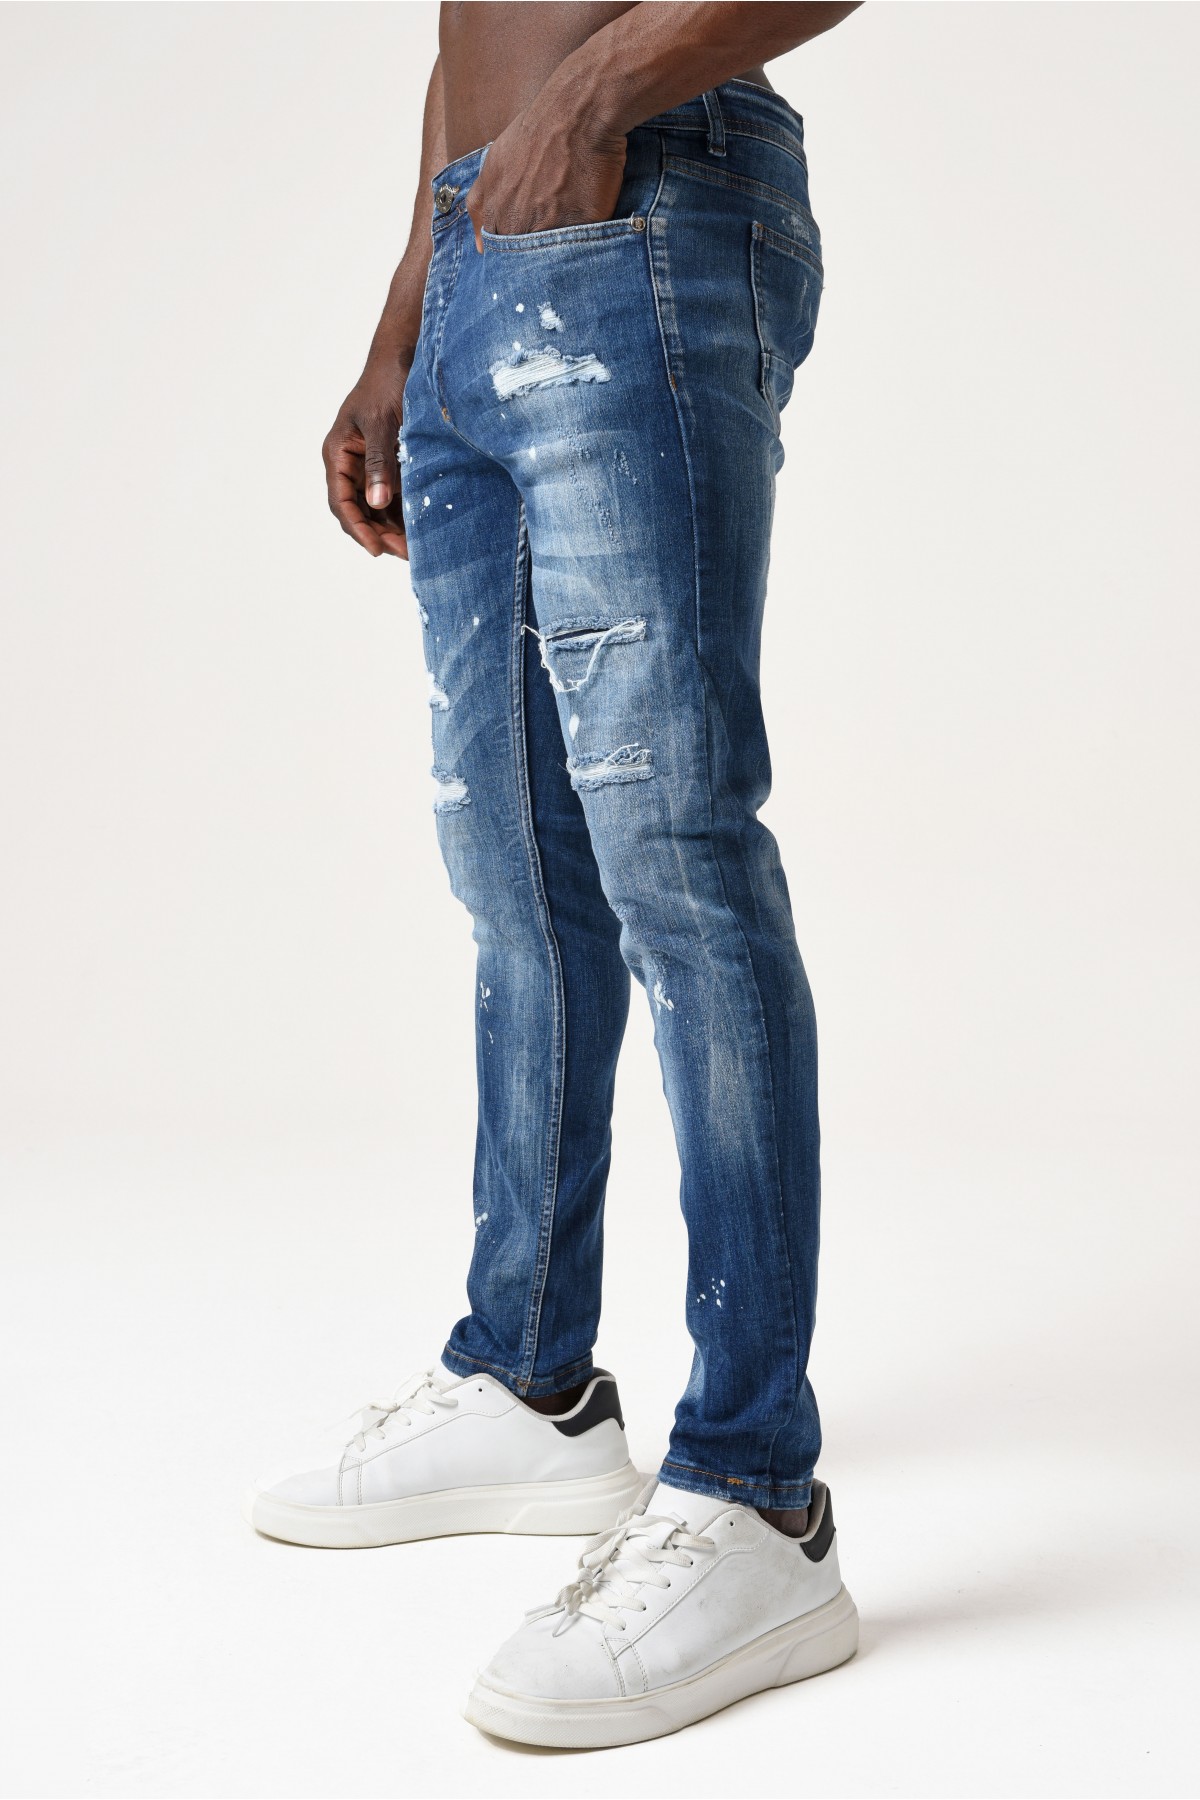 Erkek Denim Pantolon - Bel kısmı Beyaz etiketli yırtık detaylı - orta Mavi